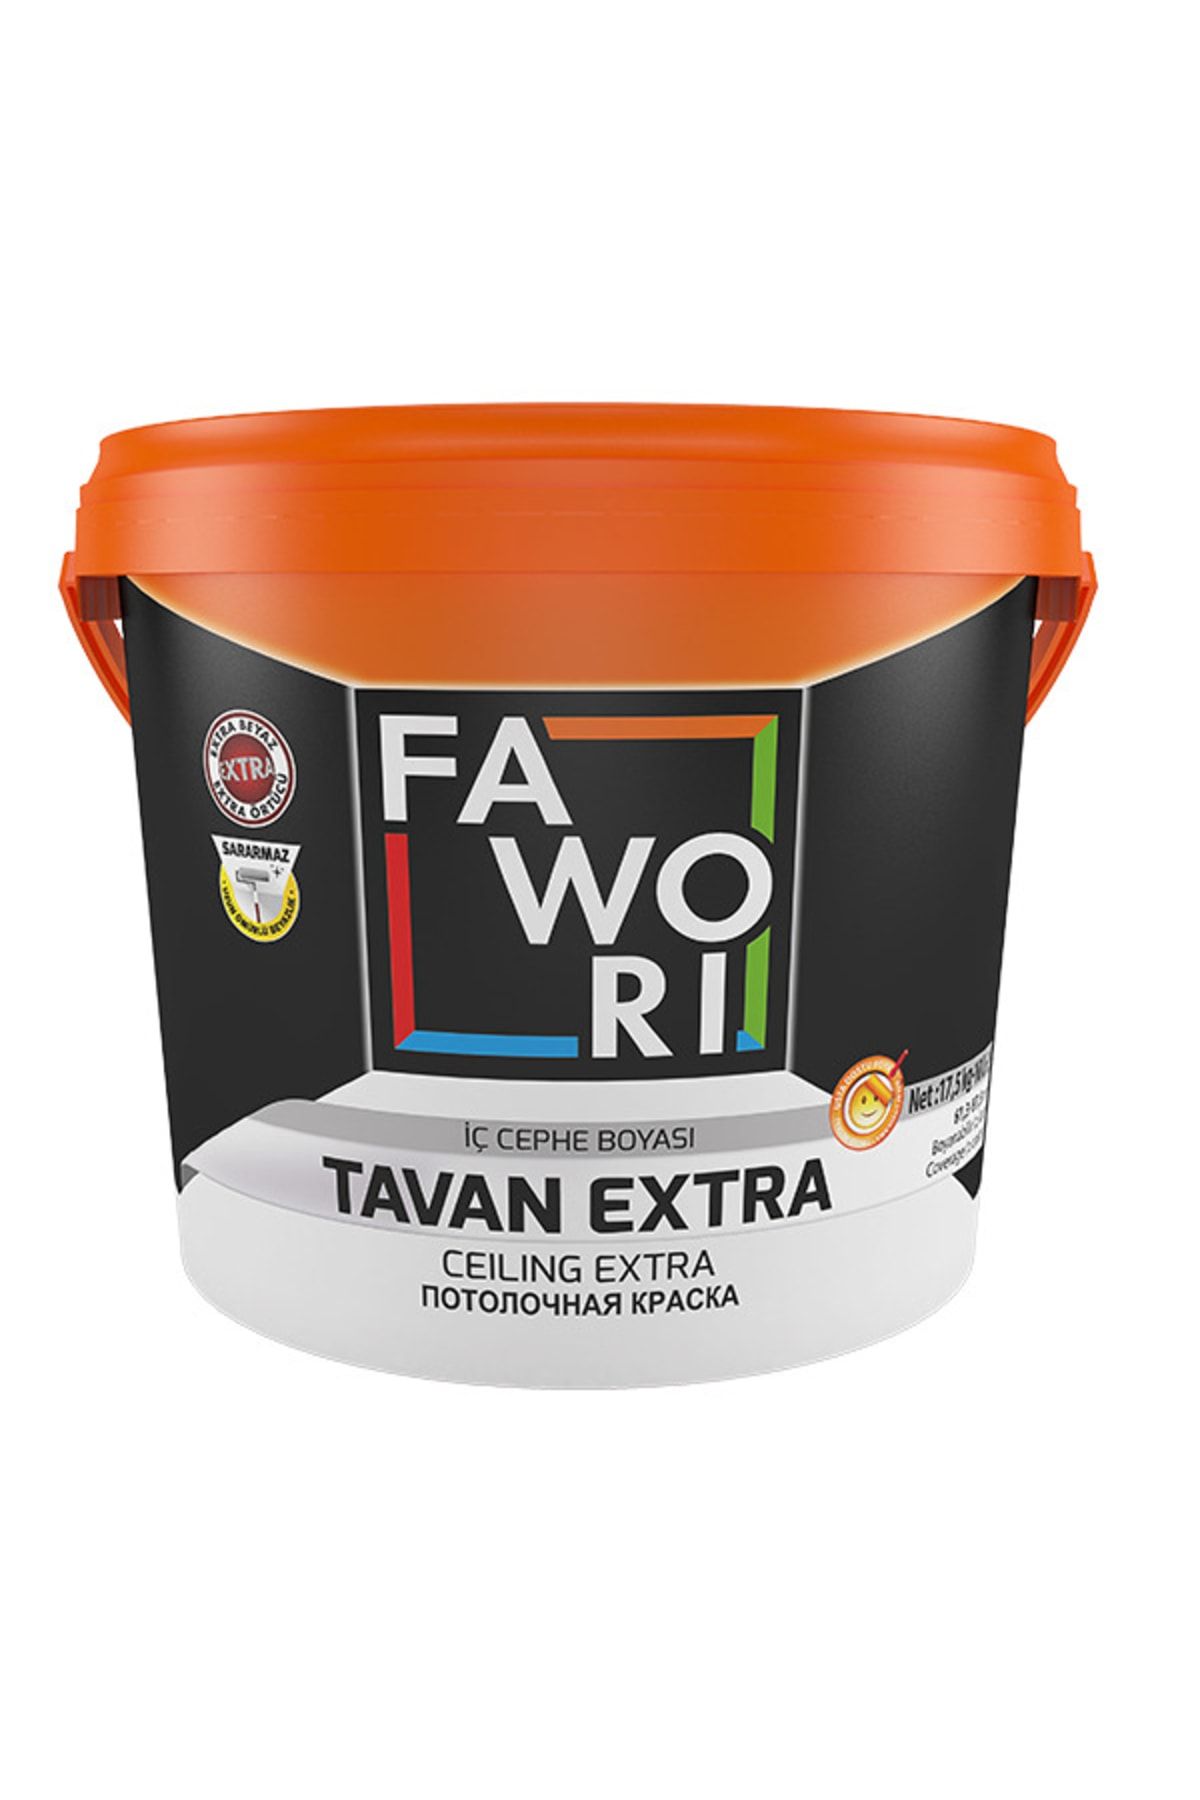 Fawori Tavan Extra